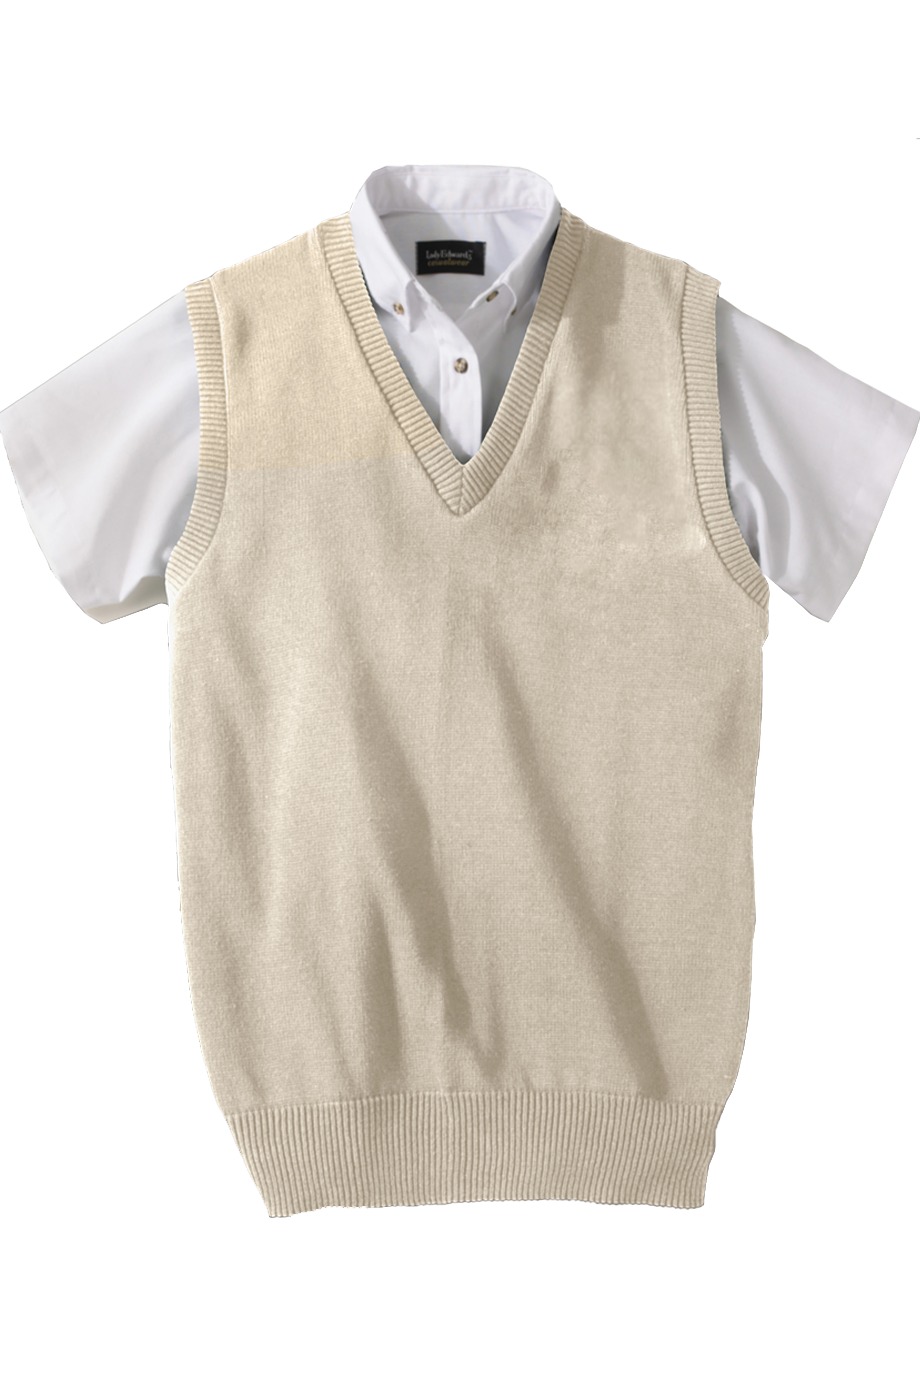 Edwards Garment 791 - Jersey Stitch V-Neck Vest